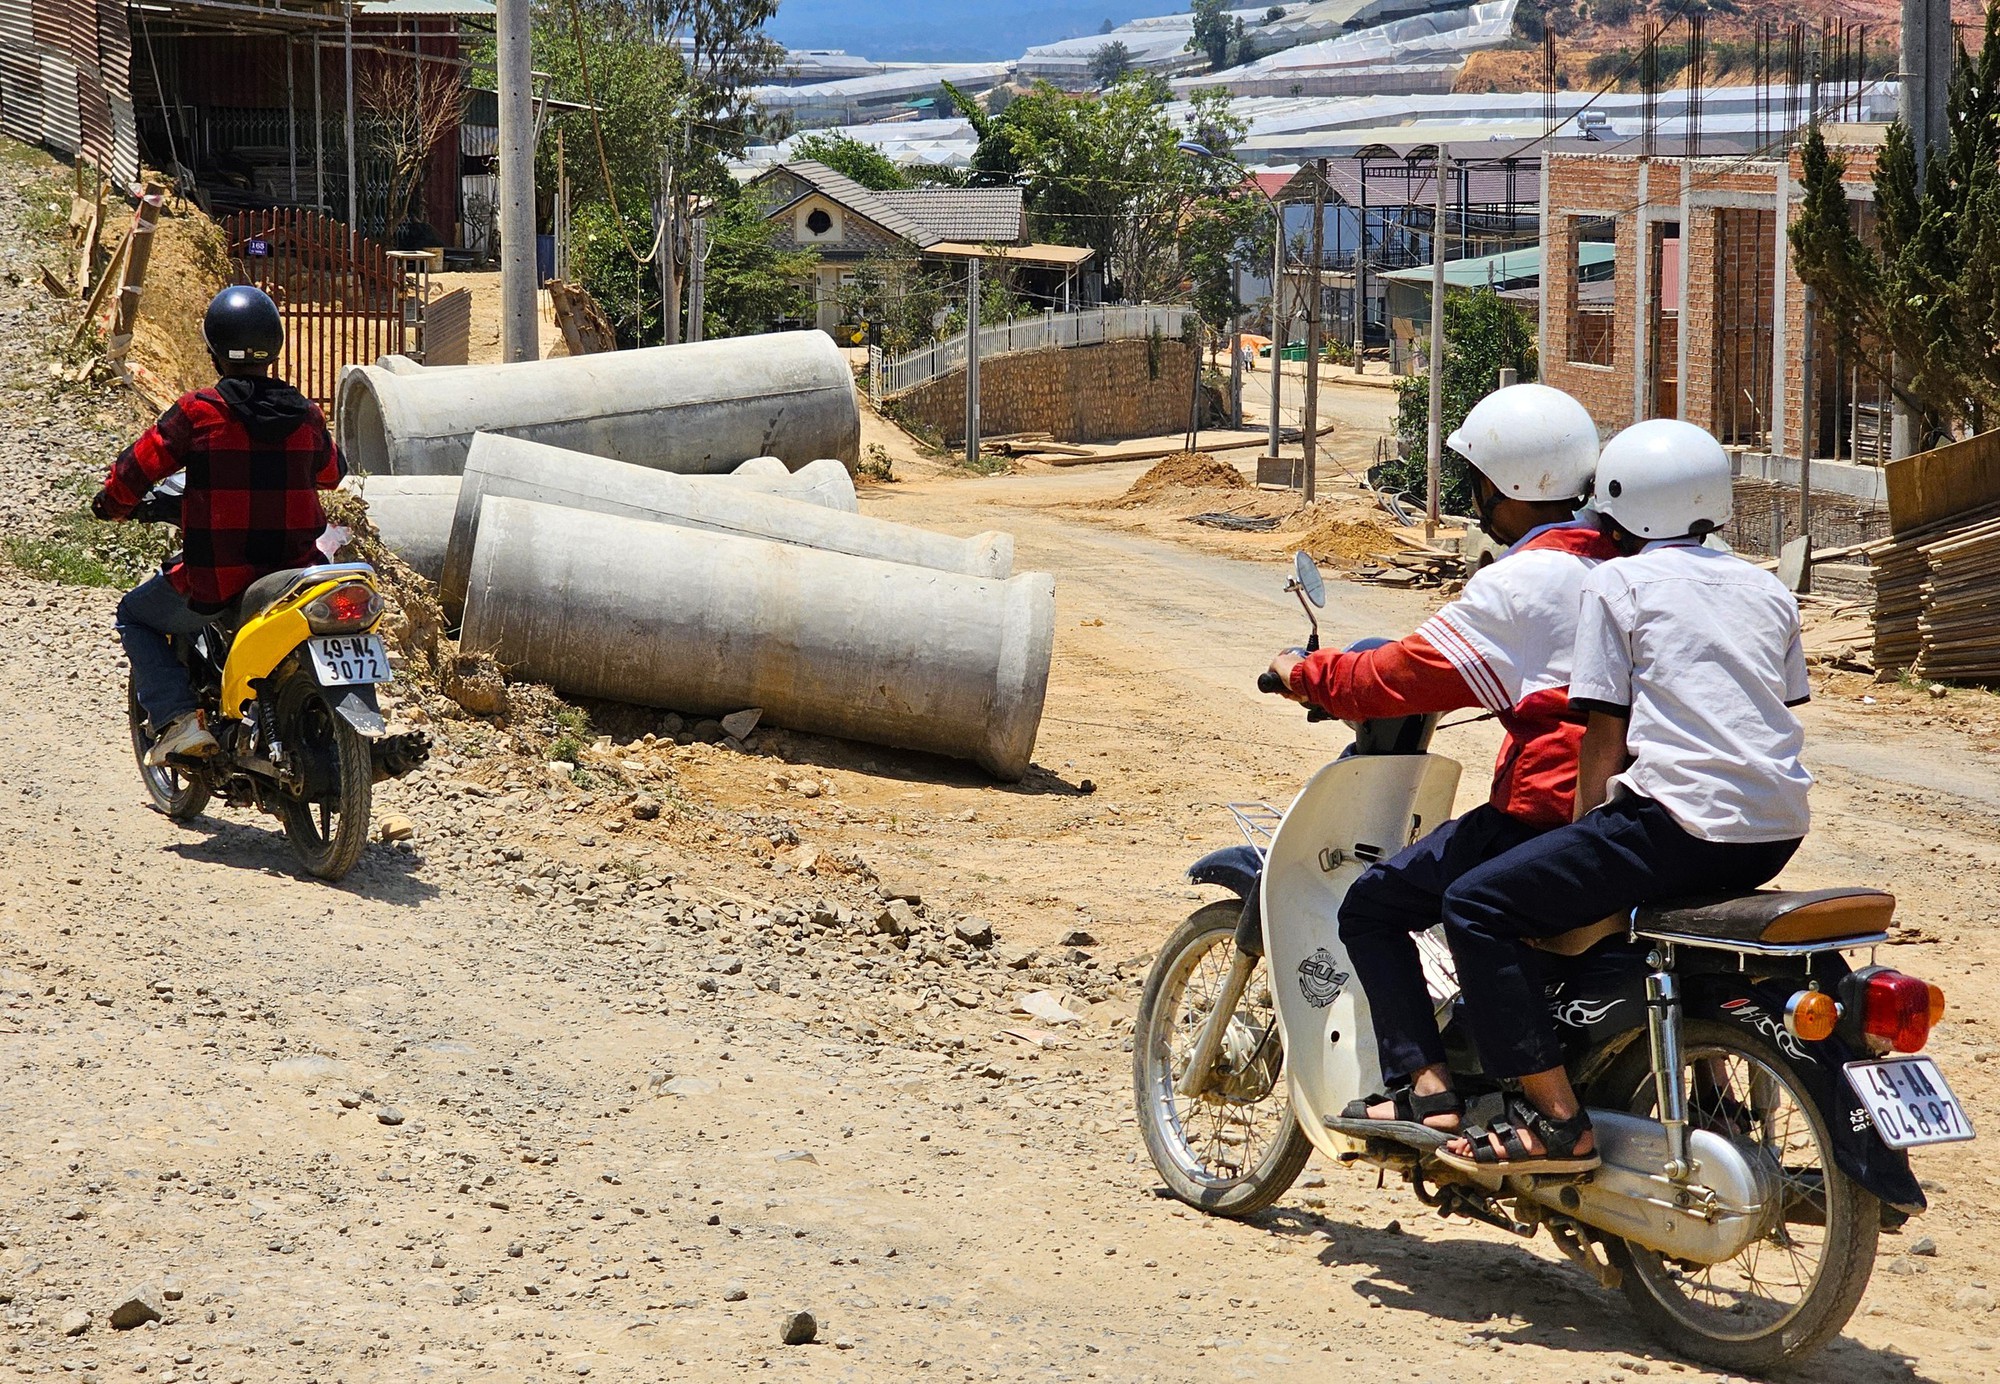 Lâm Đồng: Học sinh mờ mắt đi học trên con đường bụi 